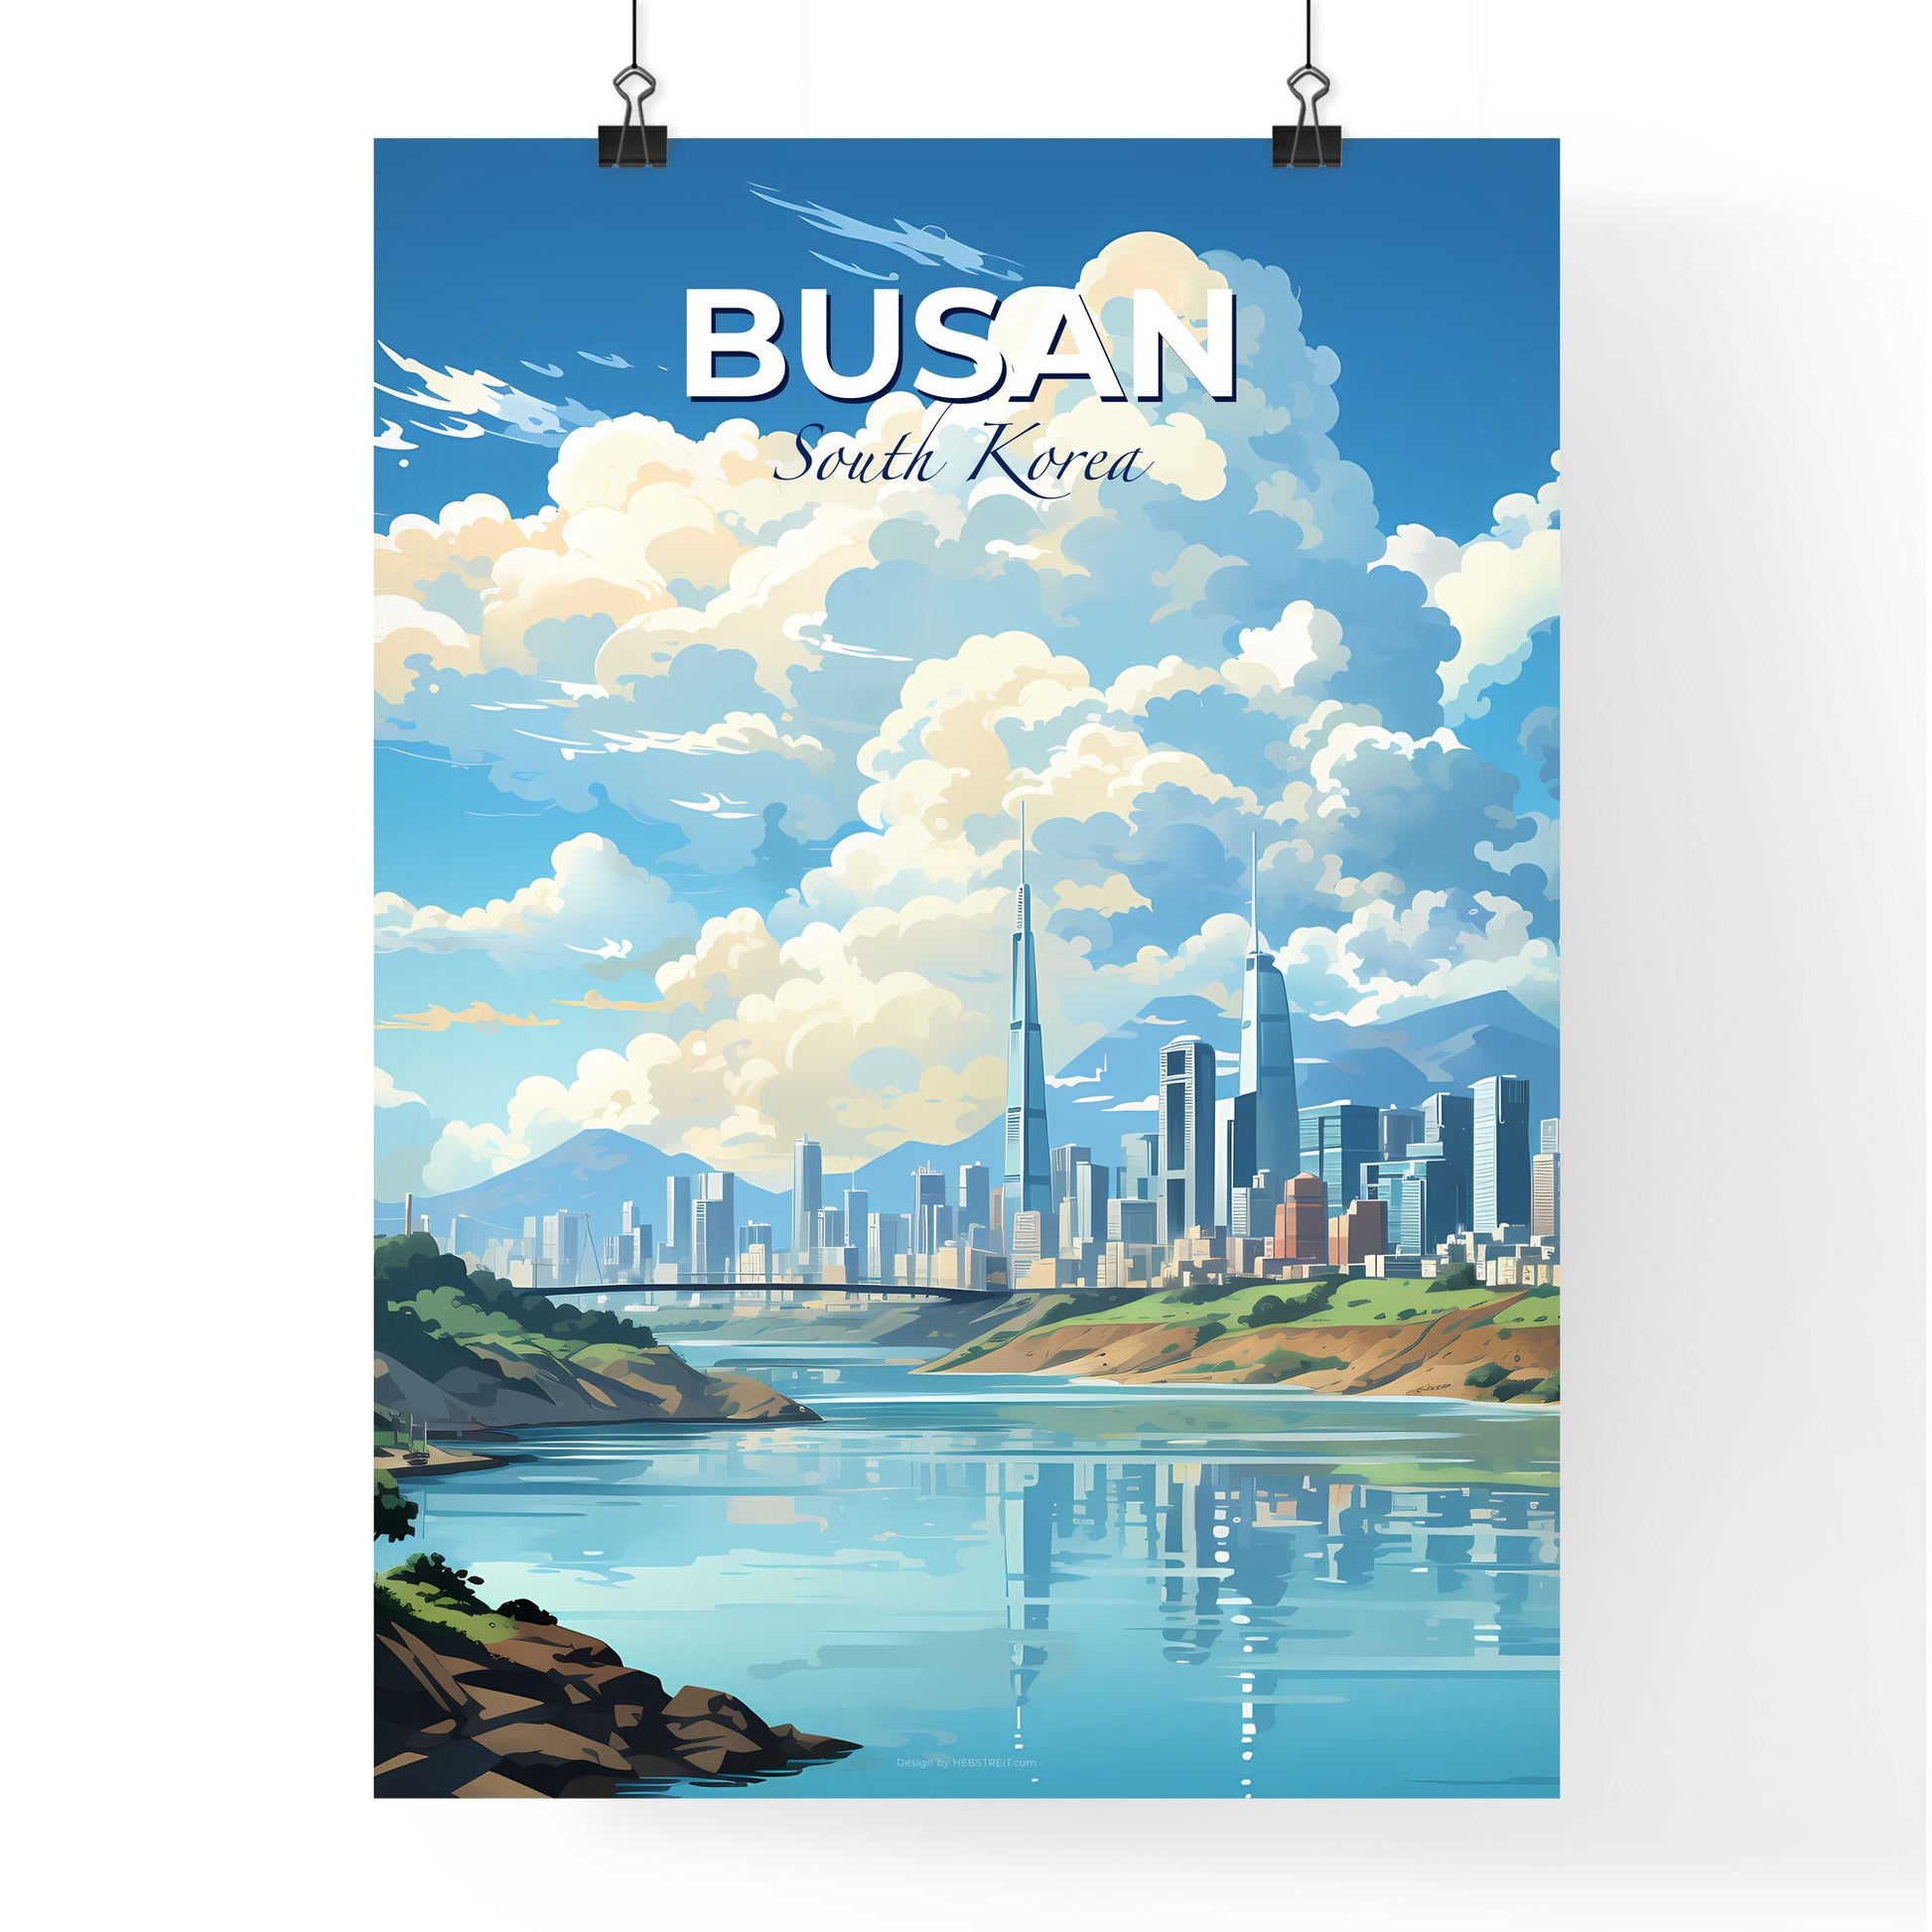 Busan South Korea Cityscape Painting: Vibrant Skyline, River, Clouds Default Title